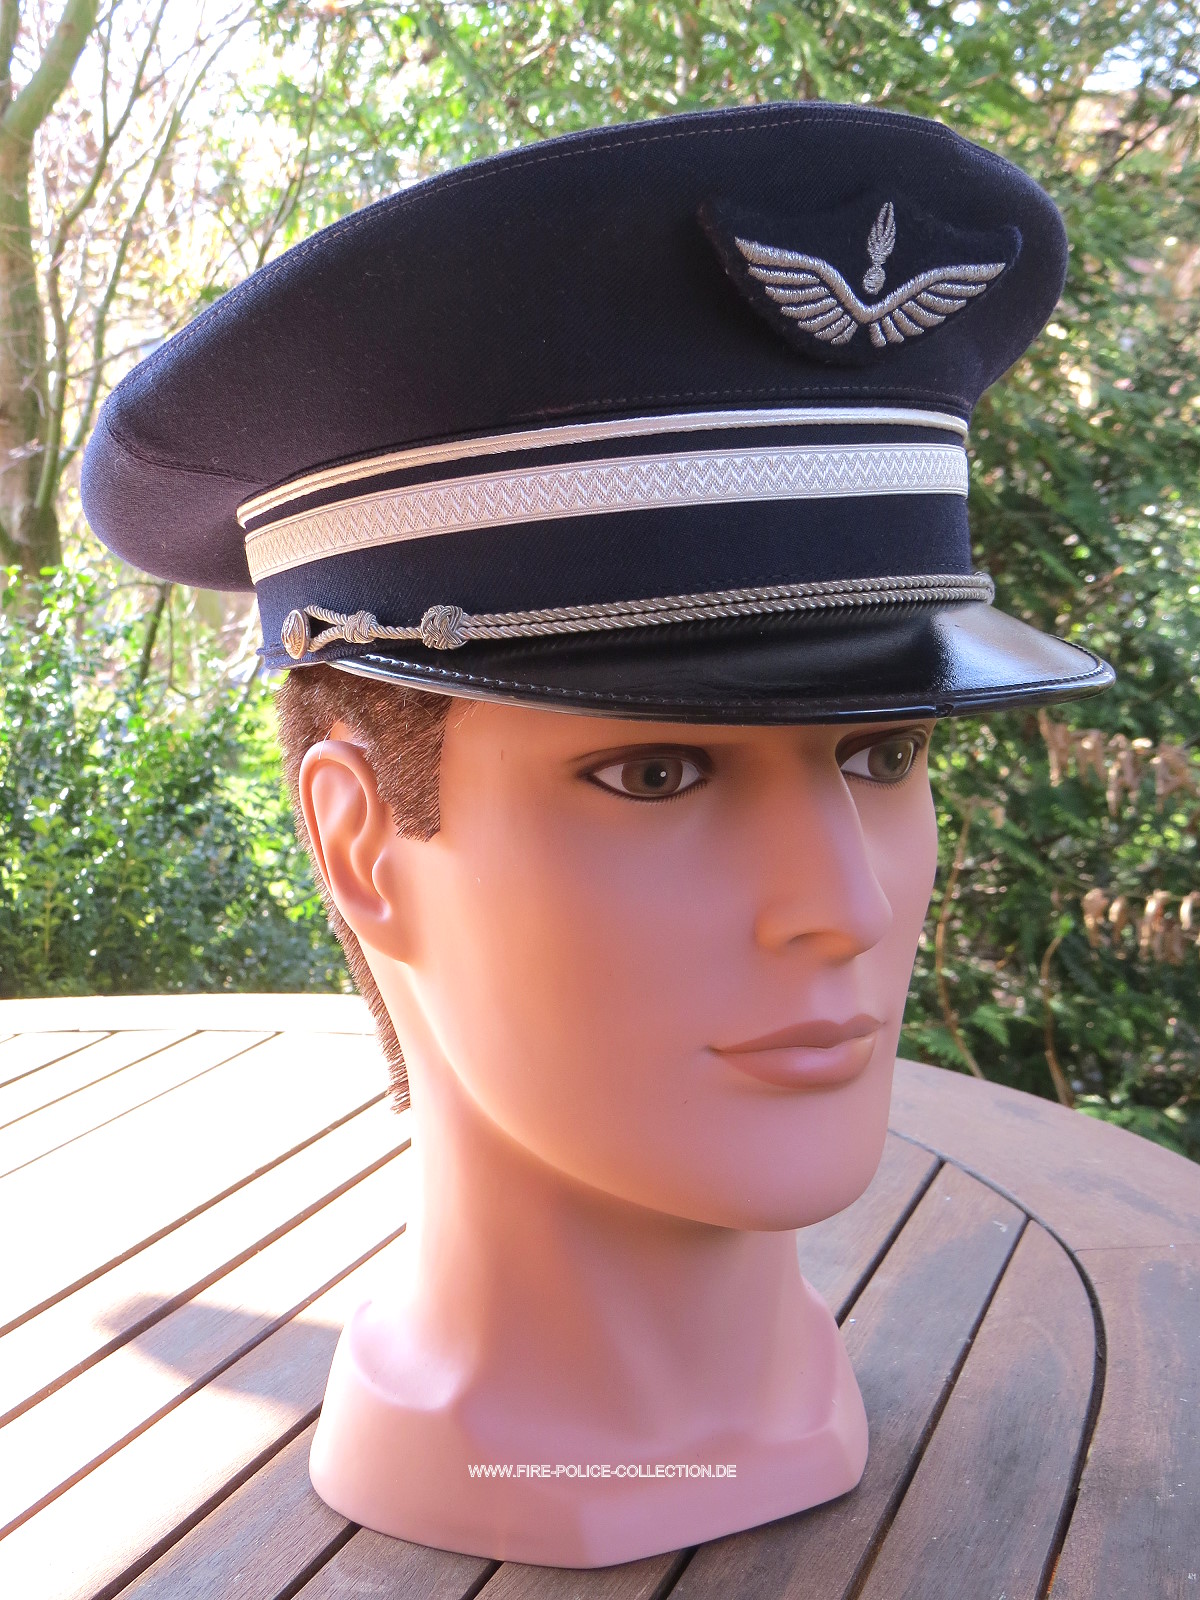 Gendarmerie de l Air